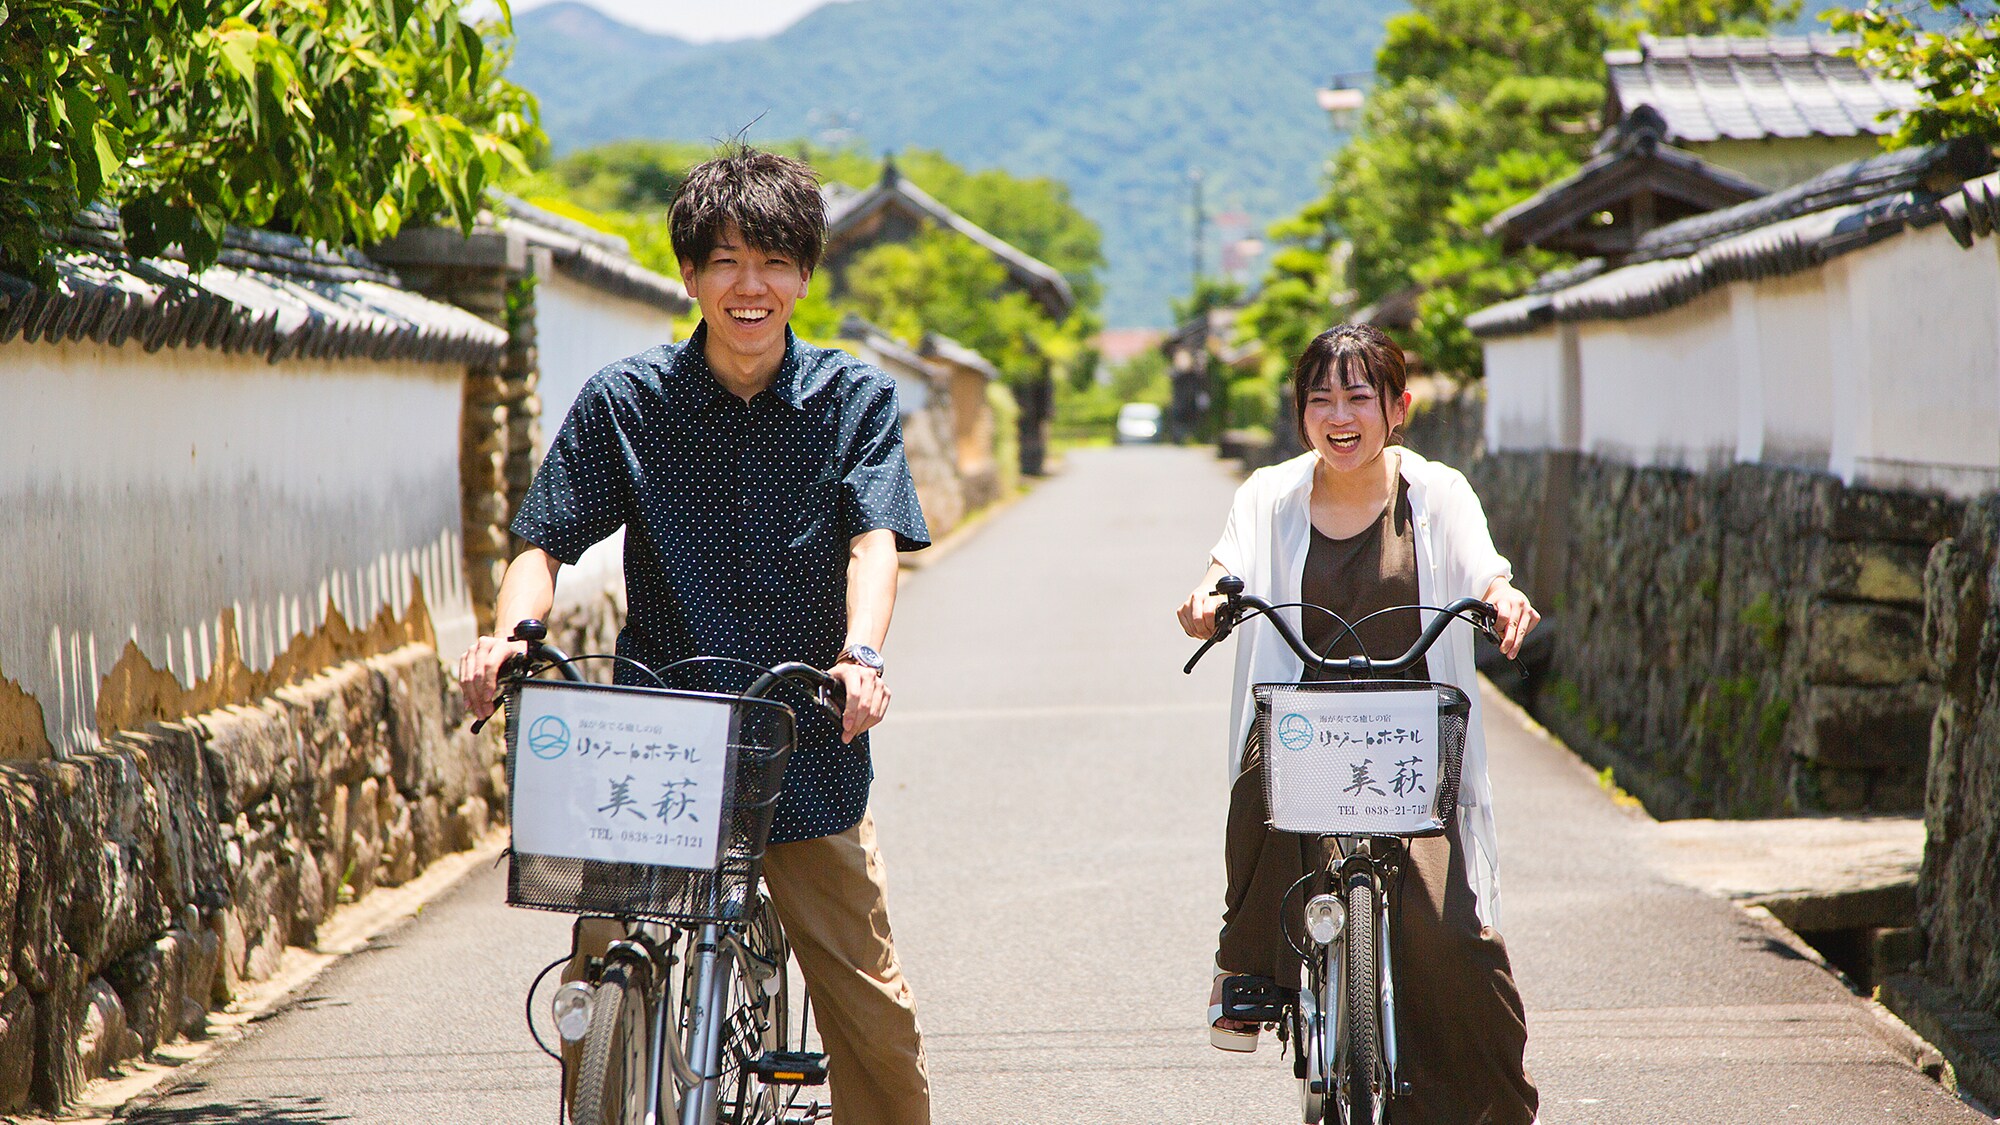 騎自行車在城下町“萩”散步♪在迷人的城市景觀中奔跑的令人振奮的感覺♪